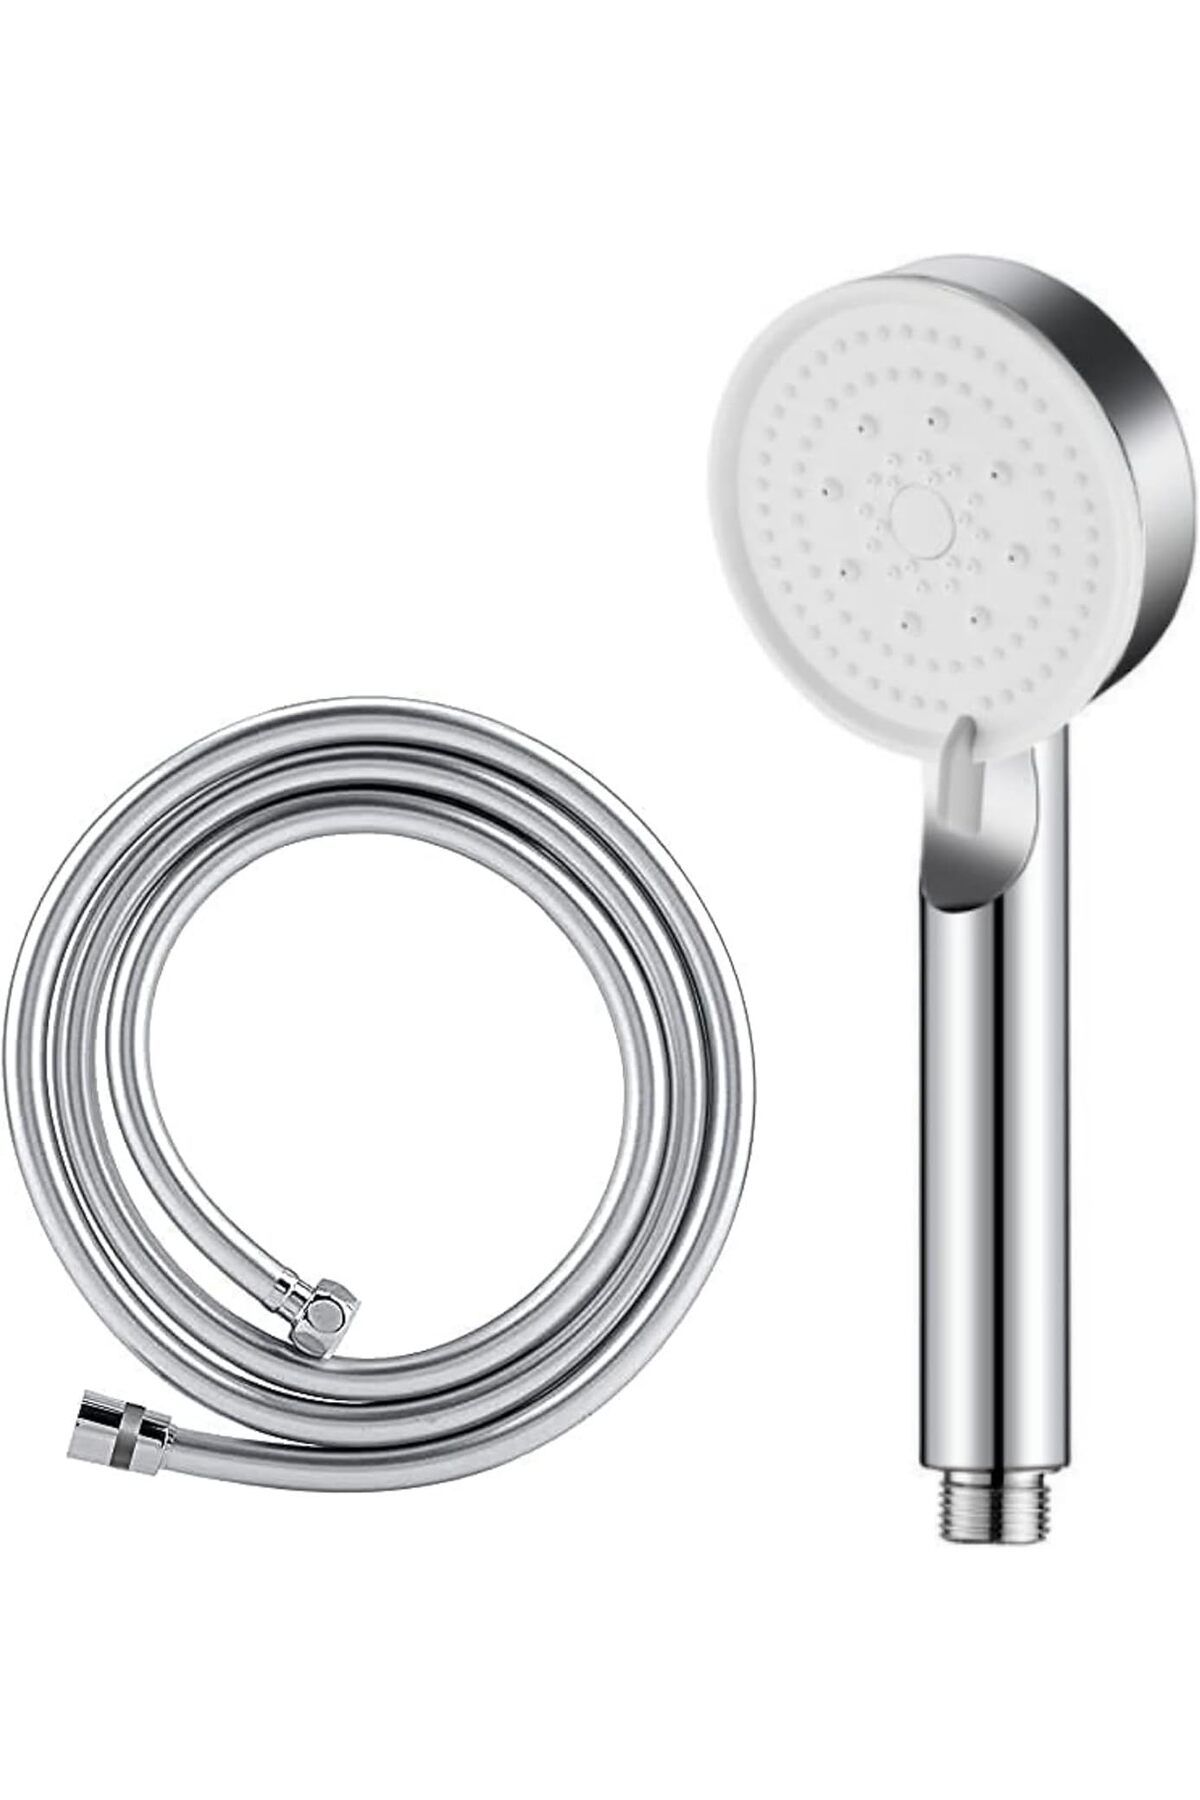 Store Glee Turbo 5 Fonksiyonlu Duş Seti - Yüksek Basınçlı Duş Başlığı ve Kopmaz PVC Hortum (150c